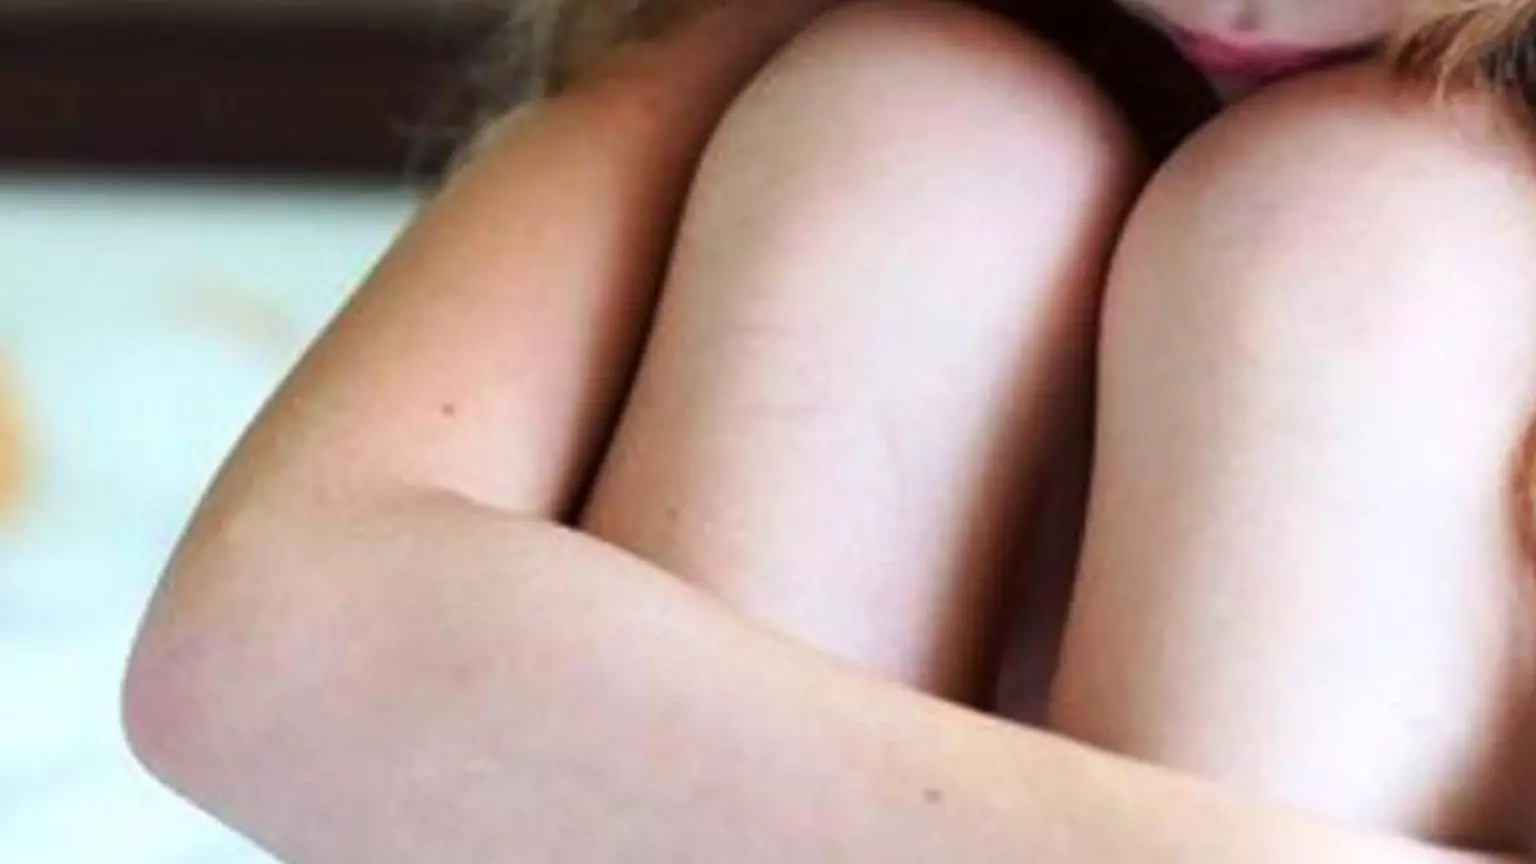 Menina de 8 anos acorda com amigo da avó a estuprando e homem oferece R$ 10